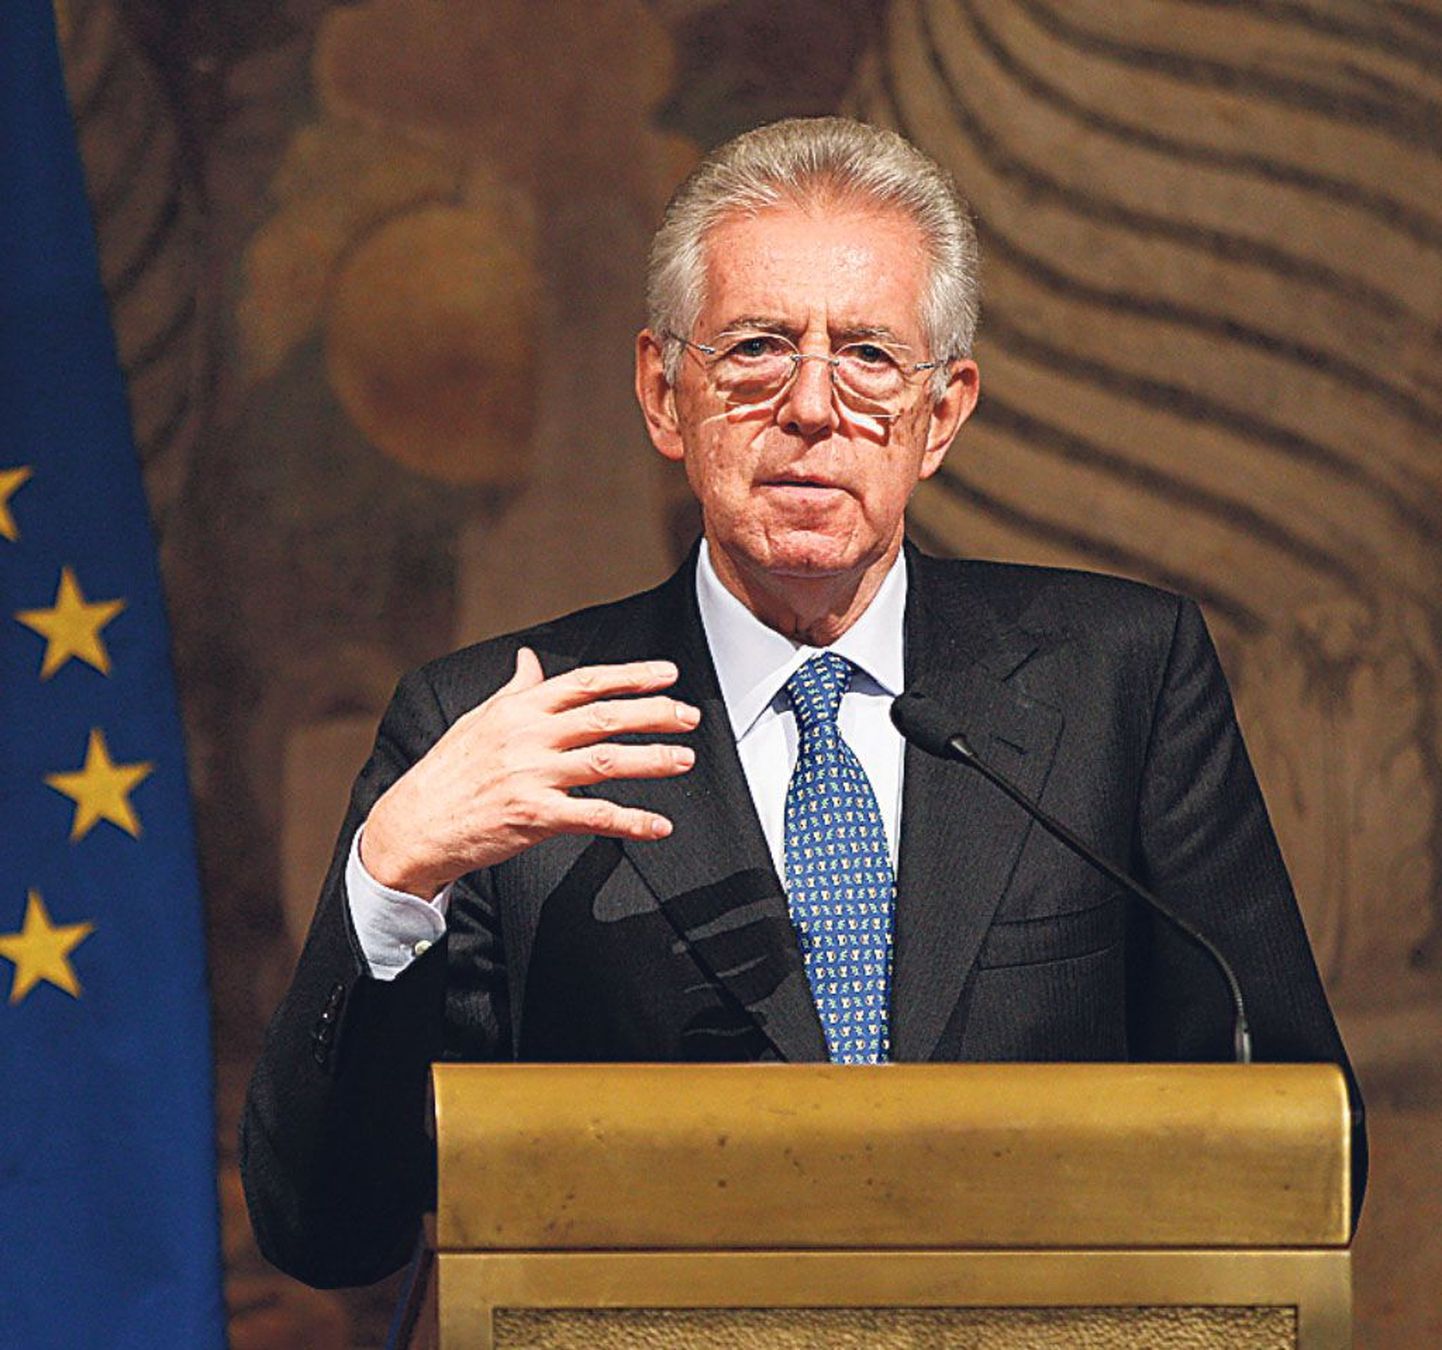 Mario Monti ütles valitsuse moodustamise mandaati vastu võttes, et kavatseb pista finantskriisiga rinda “olukorra pakilisust arvestades”, kuid ei avaldanud oma programmi üksikasju, vahendas Financial Times.